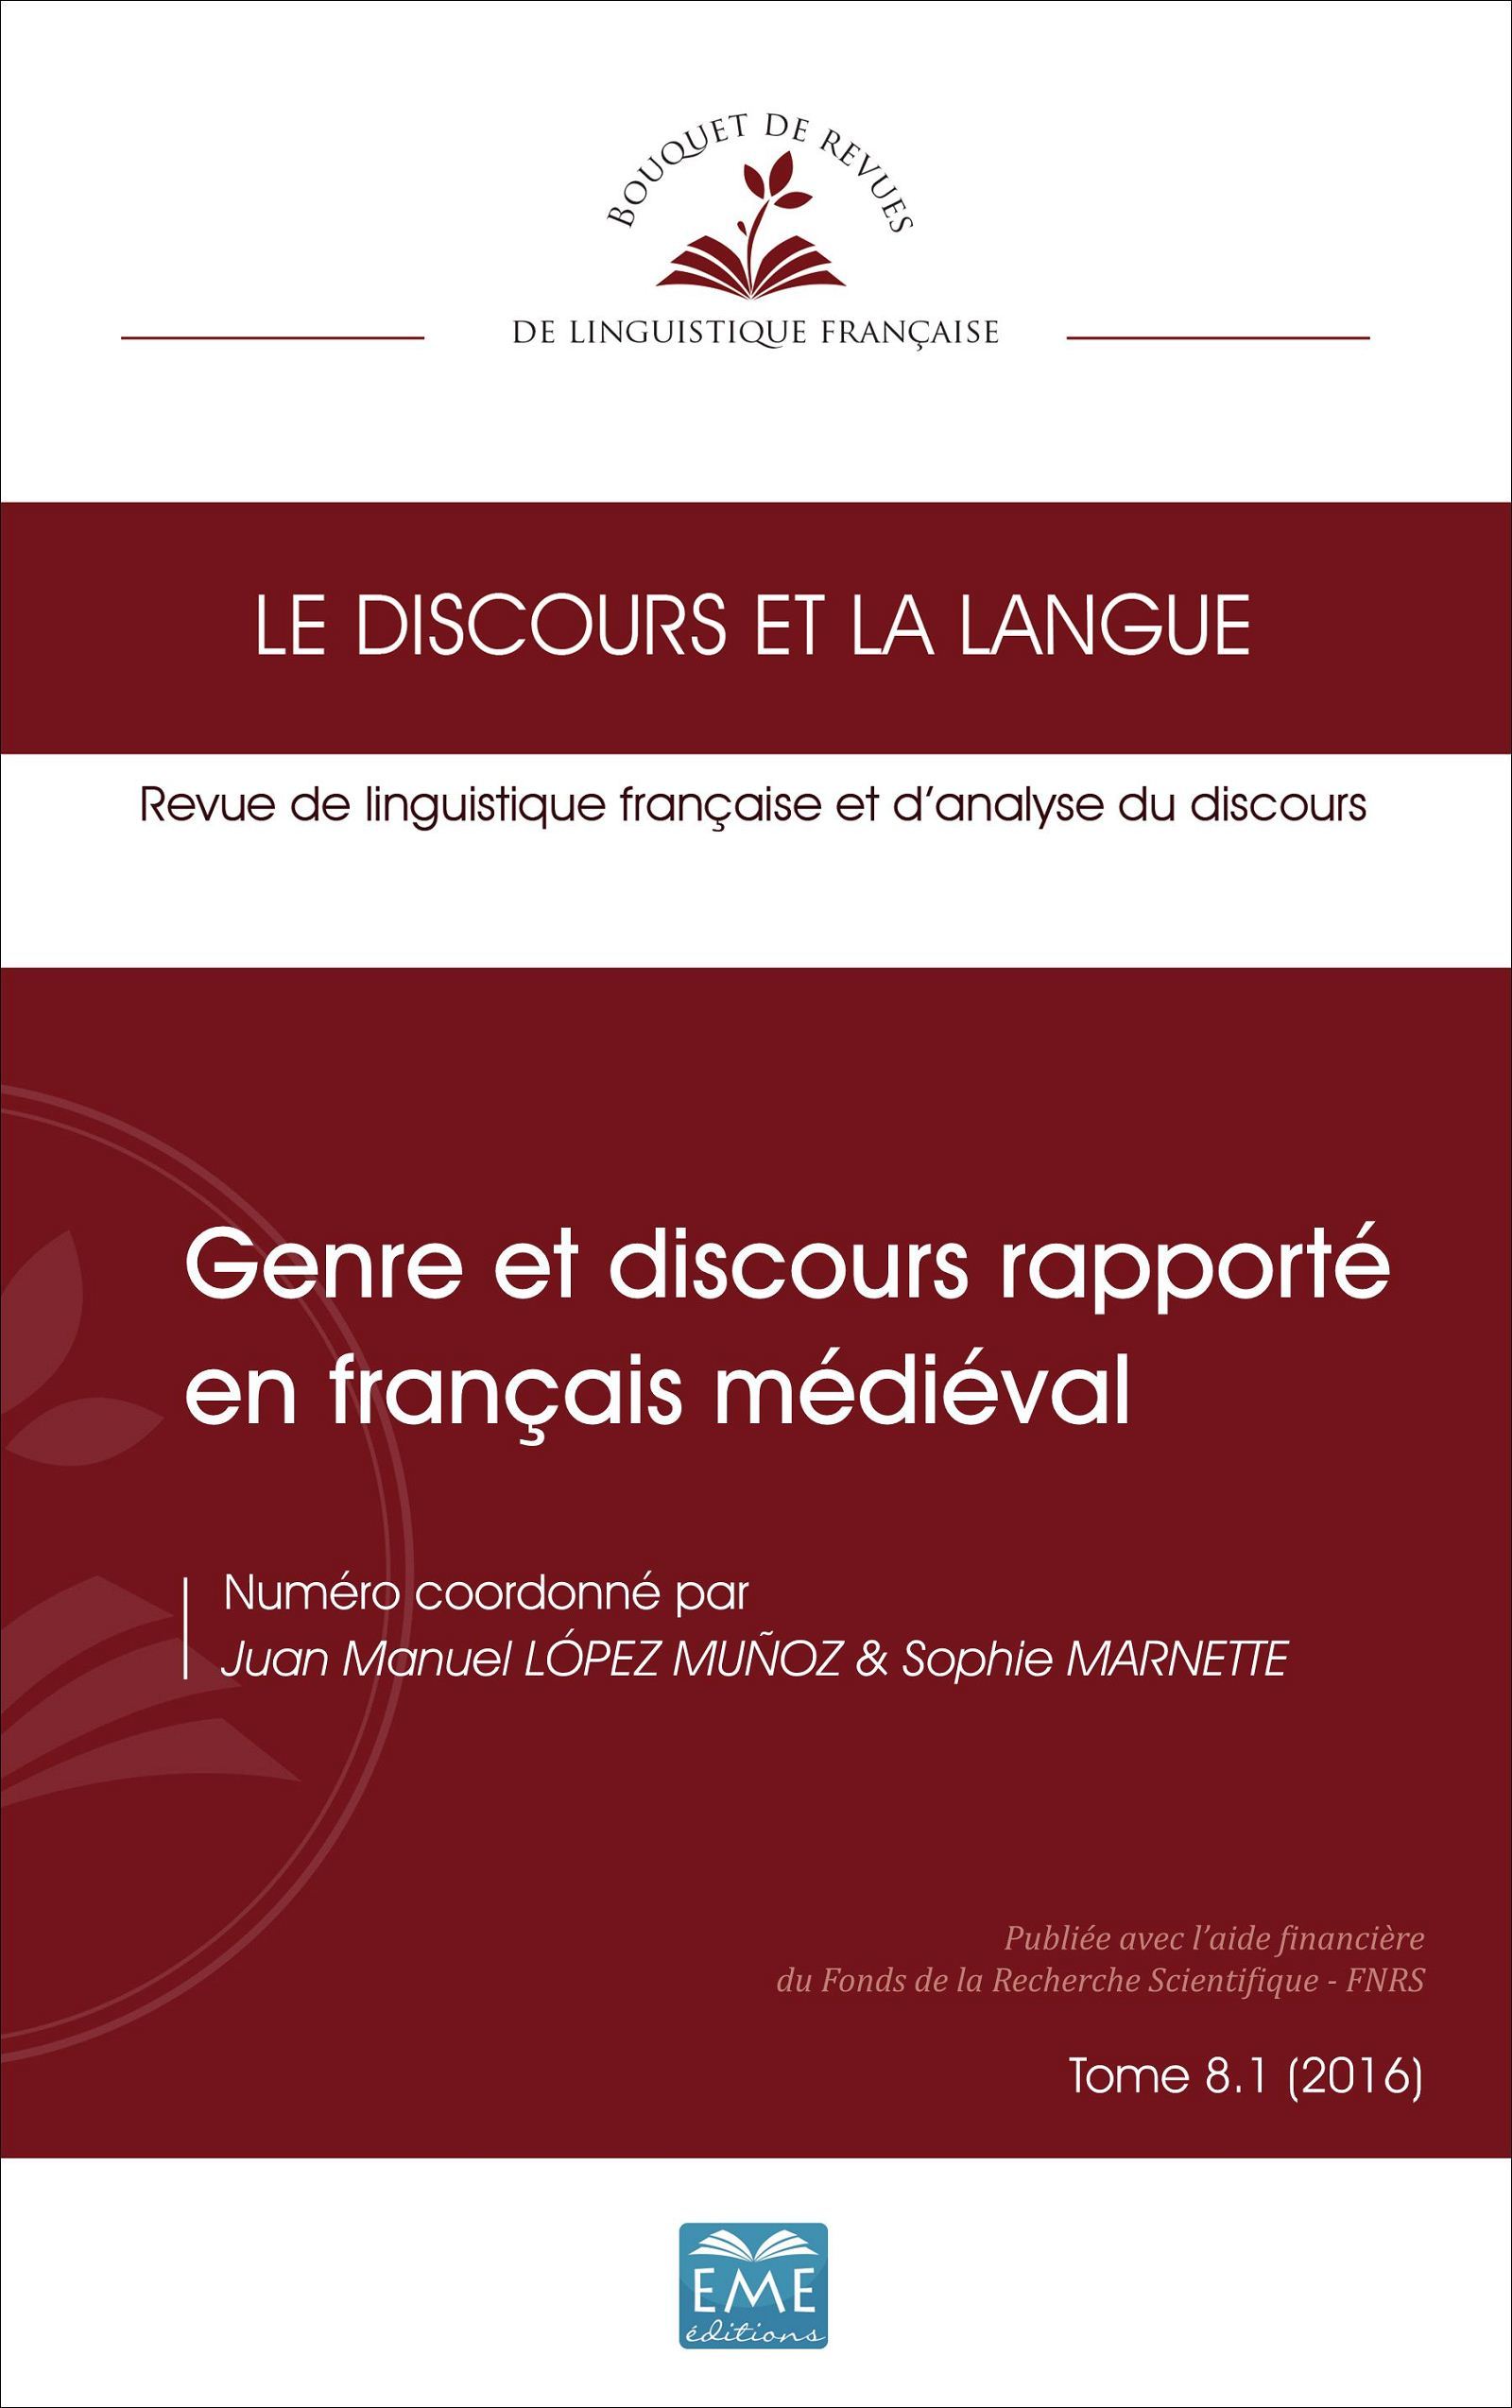 Le discours et la langue, Genre et discours rapporté en français médiéval, Tome 8. 1 (2016) (9782806635624-front-cover)